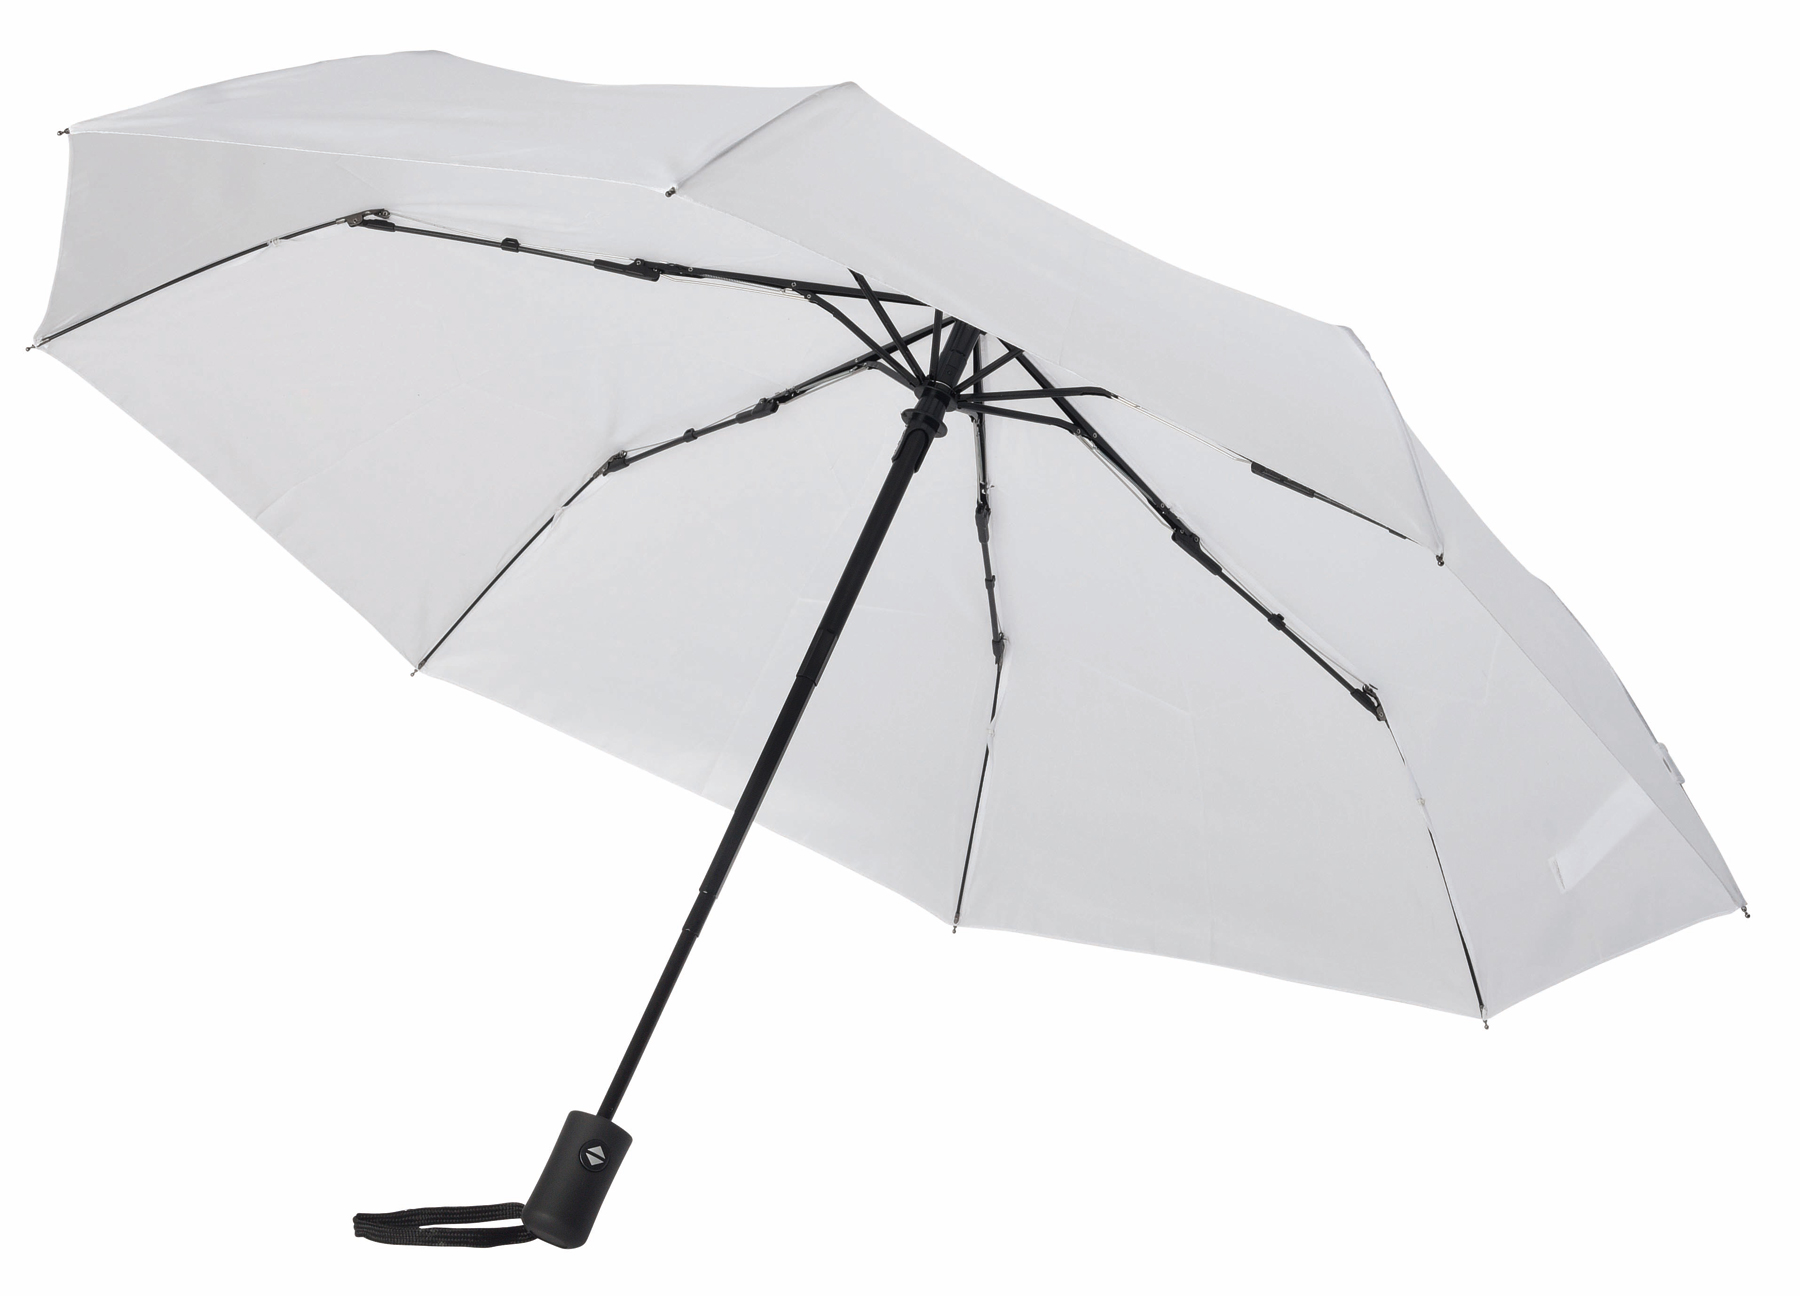 Automatyczny, wiatroodporny parasol kieszonkowy PLOPP